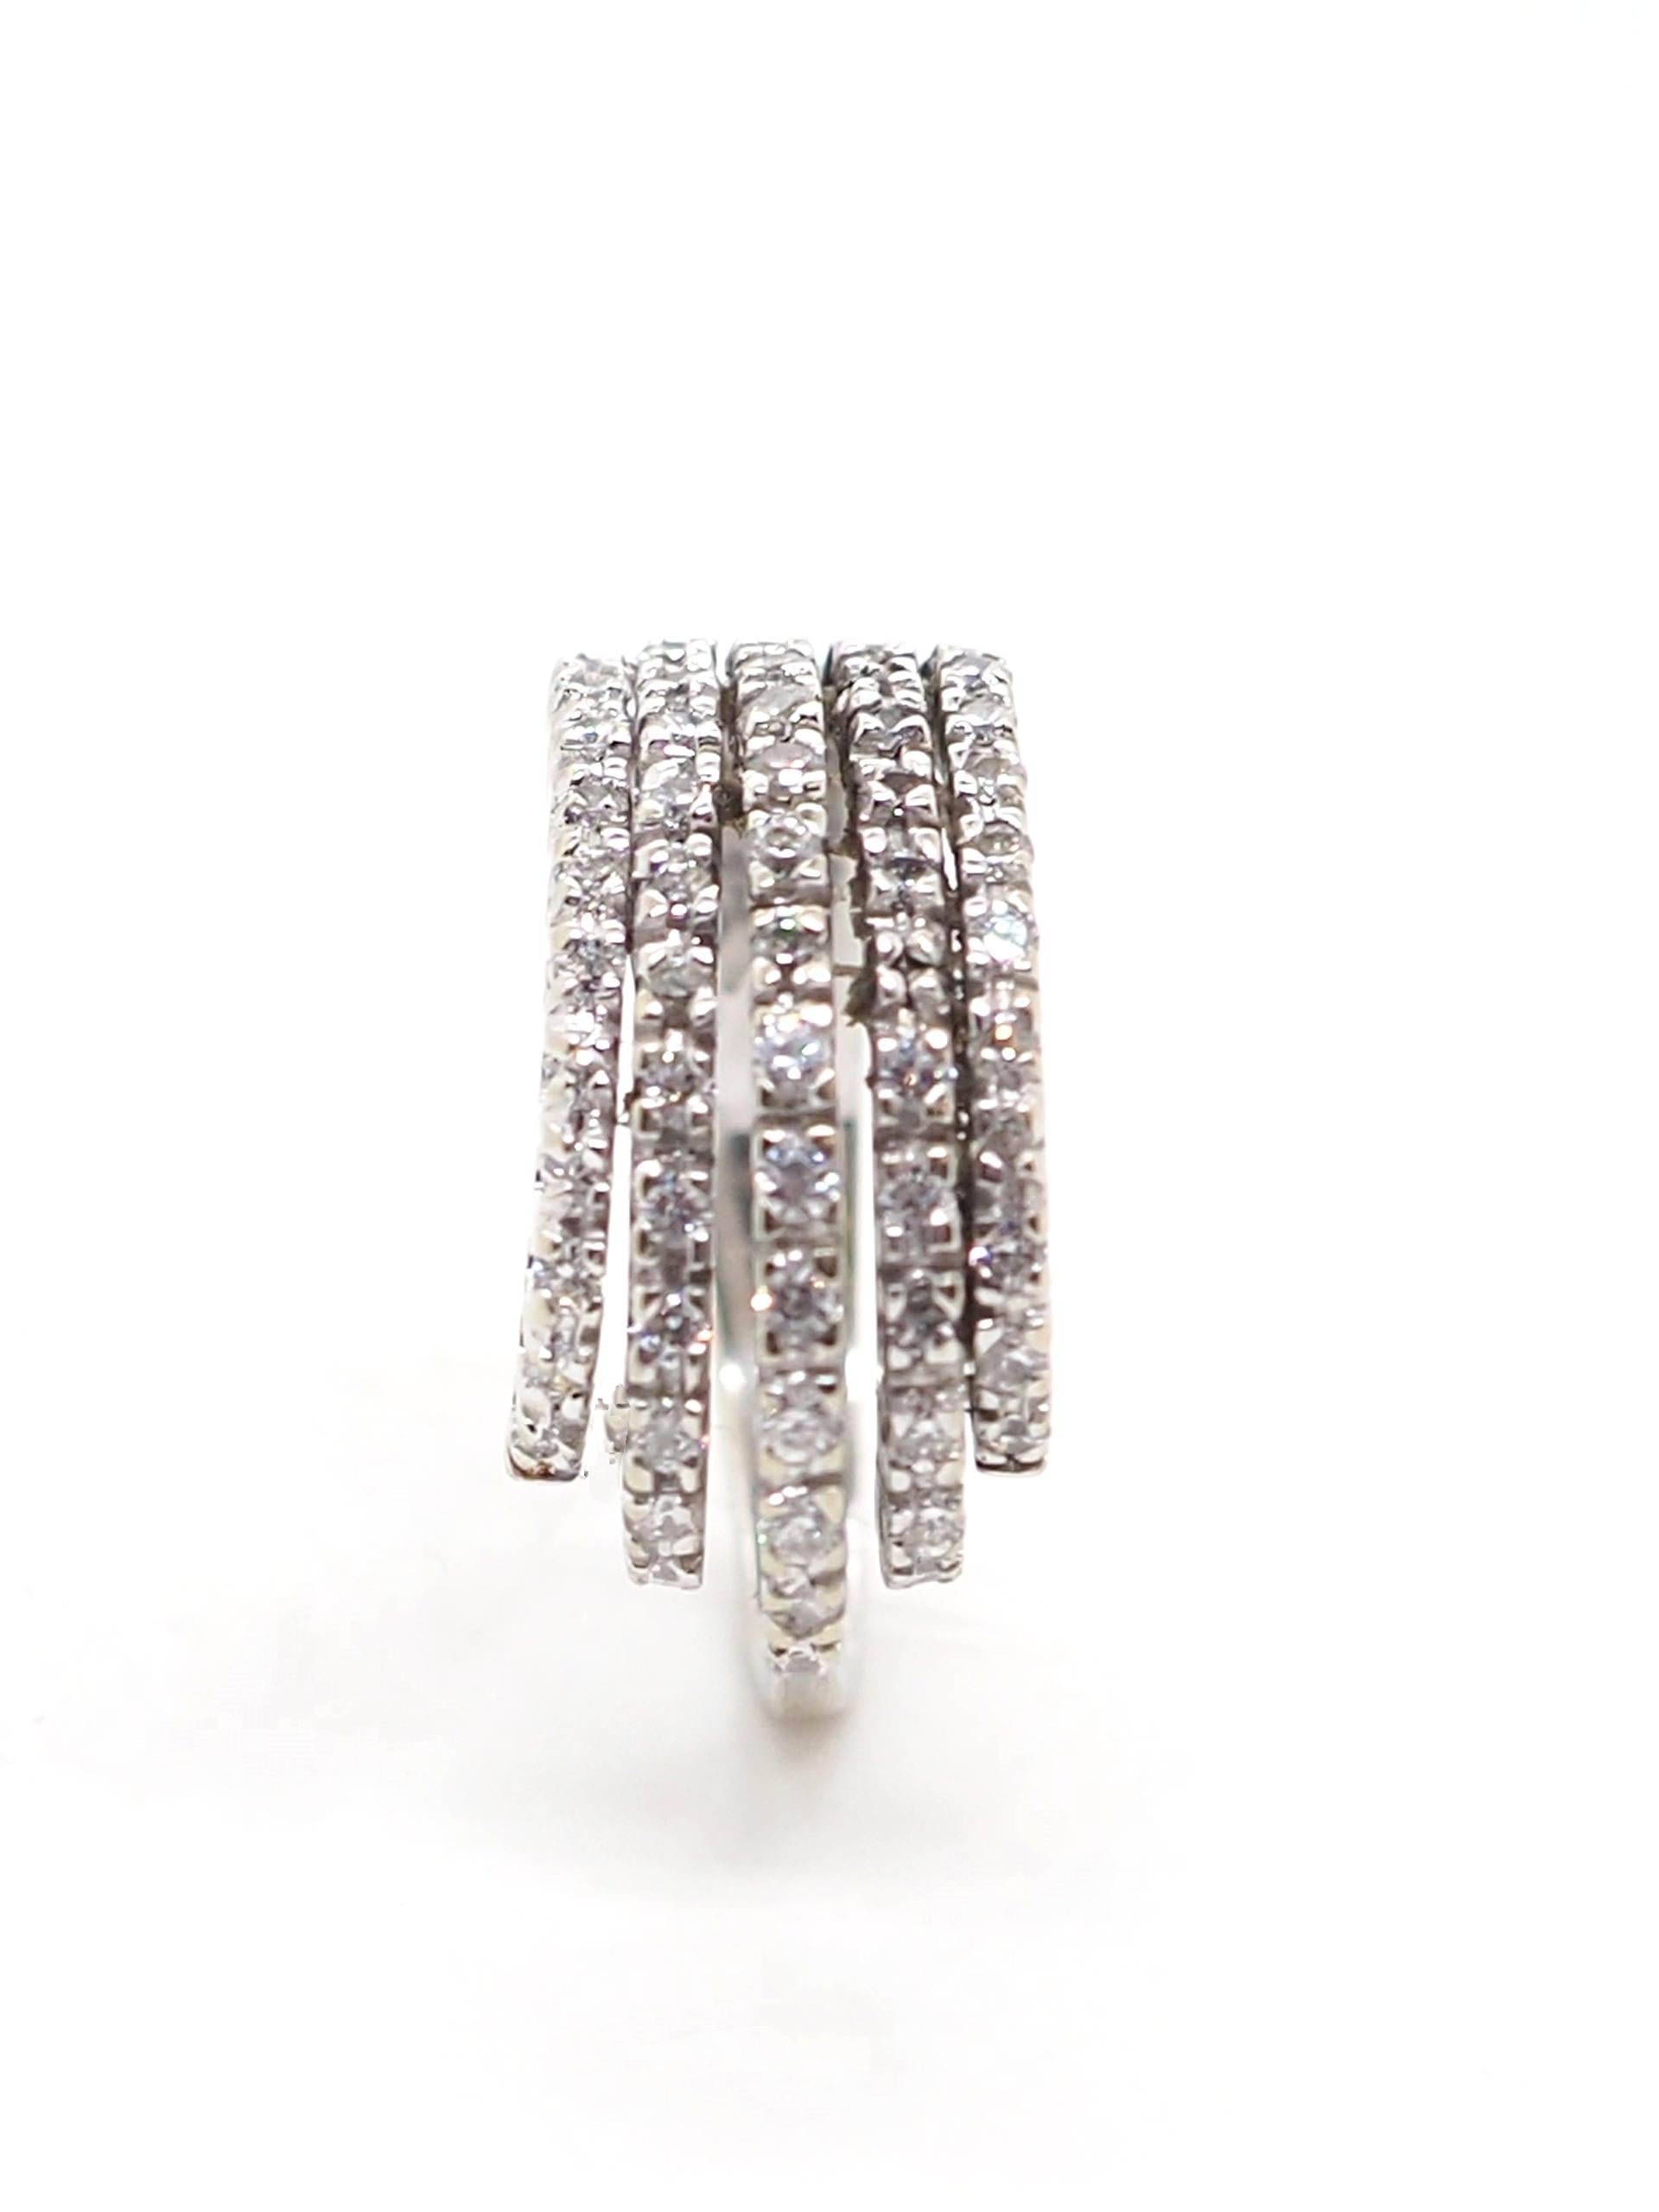 Ein wunderschöner Ring aus 18 Karat Weißgold, besetzt mit Zirkonen. Der Ring ist für jede Gelegenheit geeignet. Sie ist elegant und passt perfekt zu jedem Outfit.

Der Ring kann auf Anfrage in der Größe angepasst werden. 

Gesamtgewicht: 9